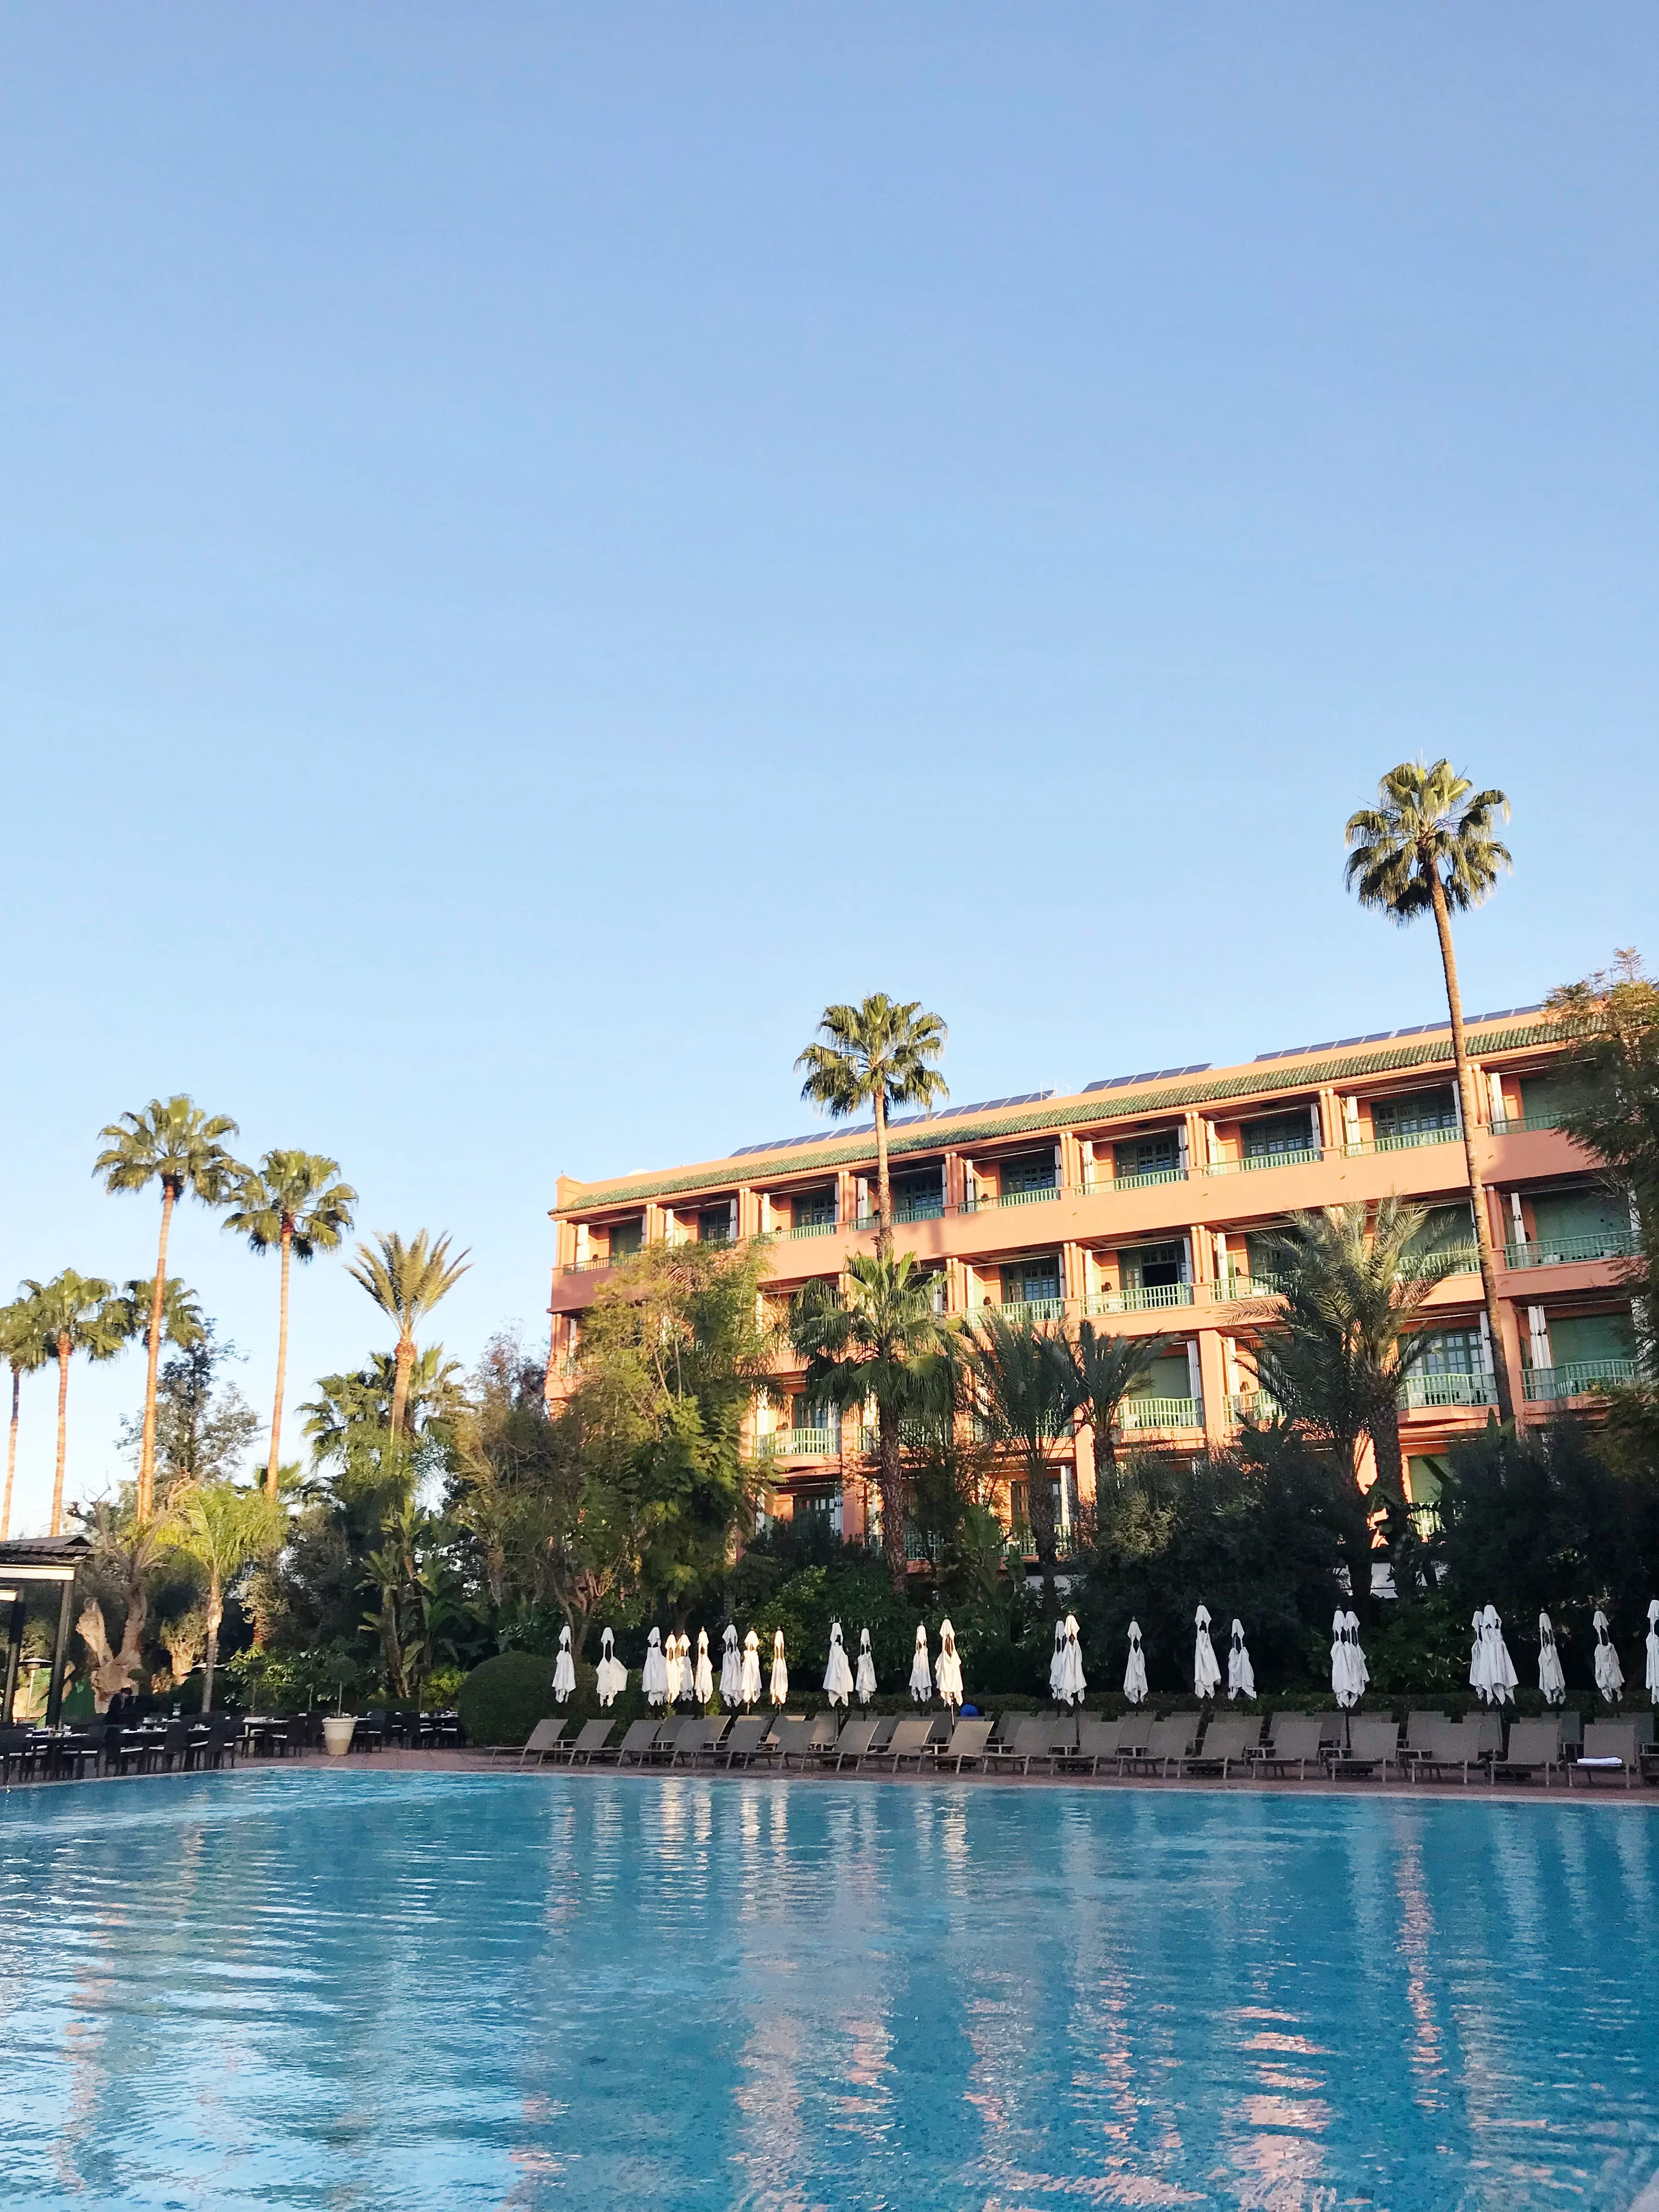 OUR STAY AT LA MAMOUNIA IN MARRAKECH | La Mamounia - La Mamounia Marrakech - La Mamounia Spa - Hotel La Mamounia - La Mamounia Hotel - Mamounia - Morocco Hotels - Marrakech Hotels - Morocco Travel Blog - La Mamounia Review - Hotel Review Morocco - Morocco Travel Blog #morocco #travelblog #marrakech